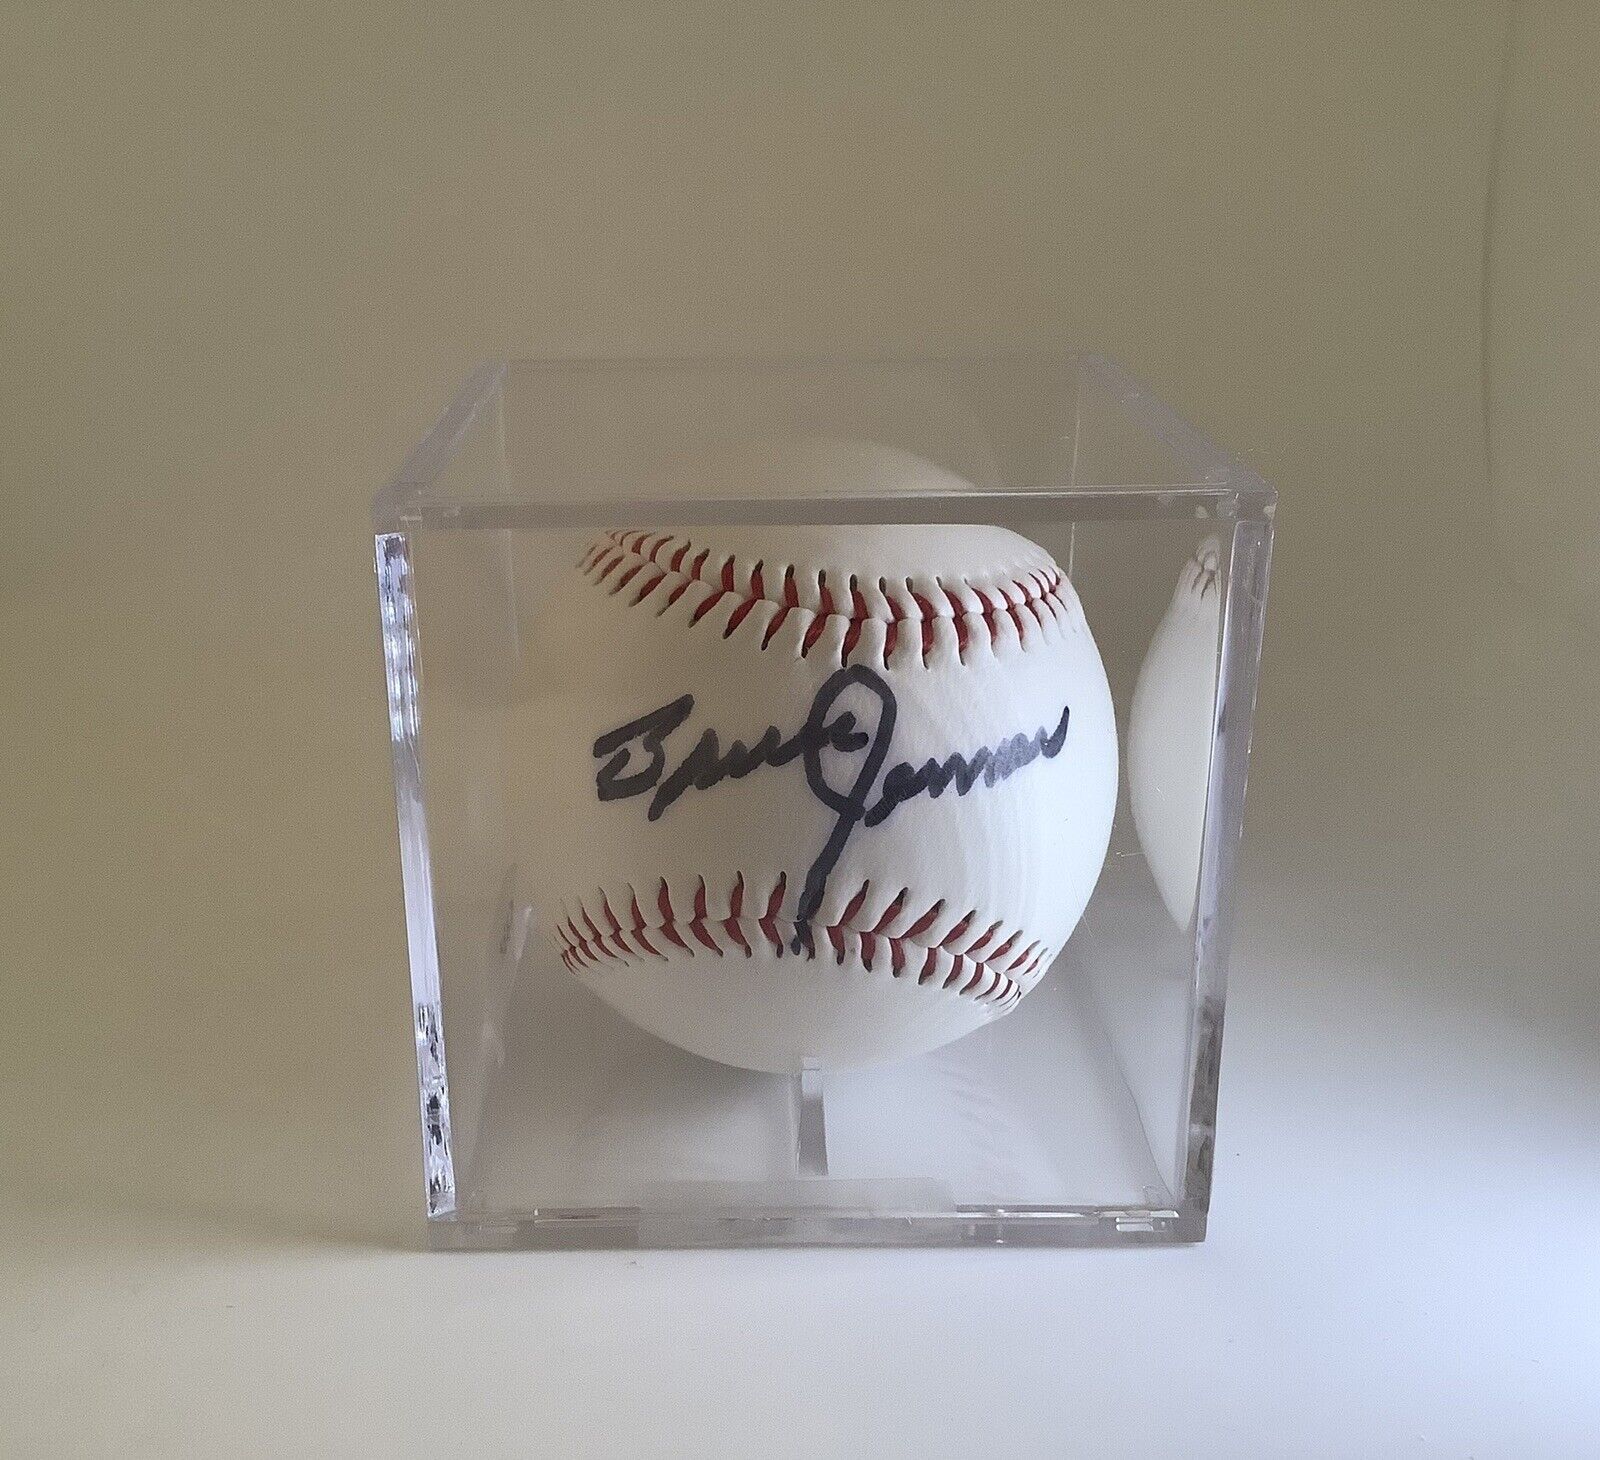 Bruce Jenner Signed Spalding Baseball